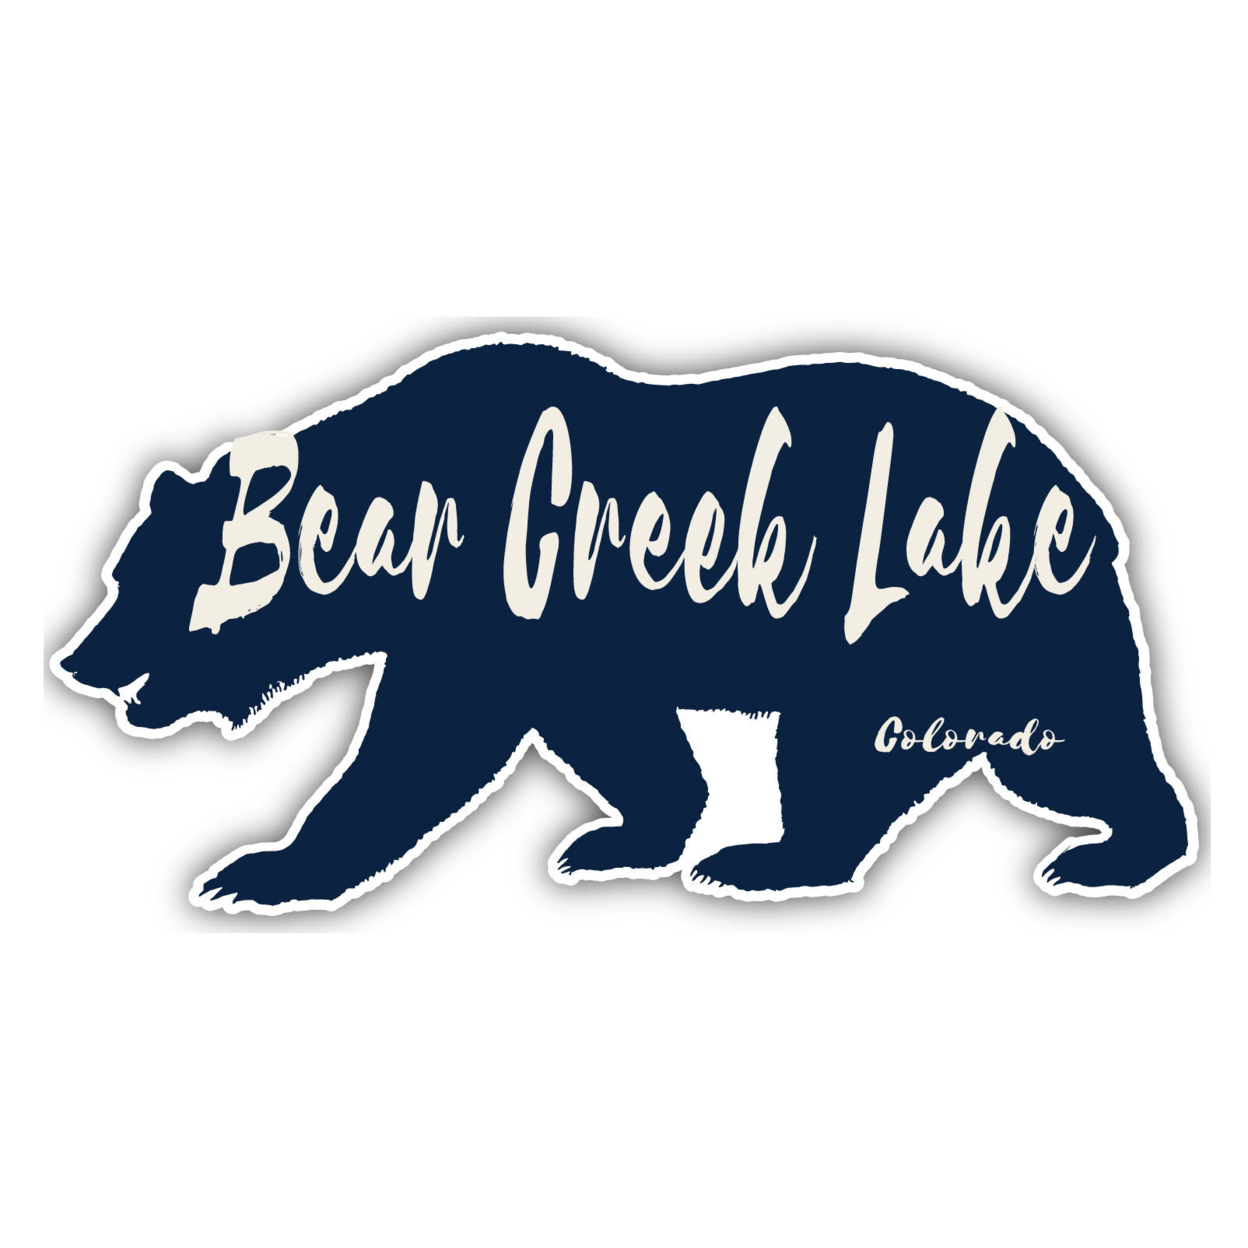 Bear Creek Lake Colorado Souvenir Decorative Stickers (Choose Theme And Size) - Single Unit, 2-Inch, Bear